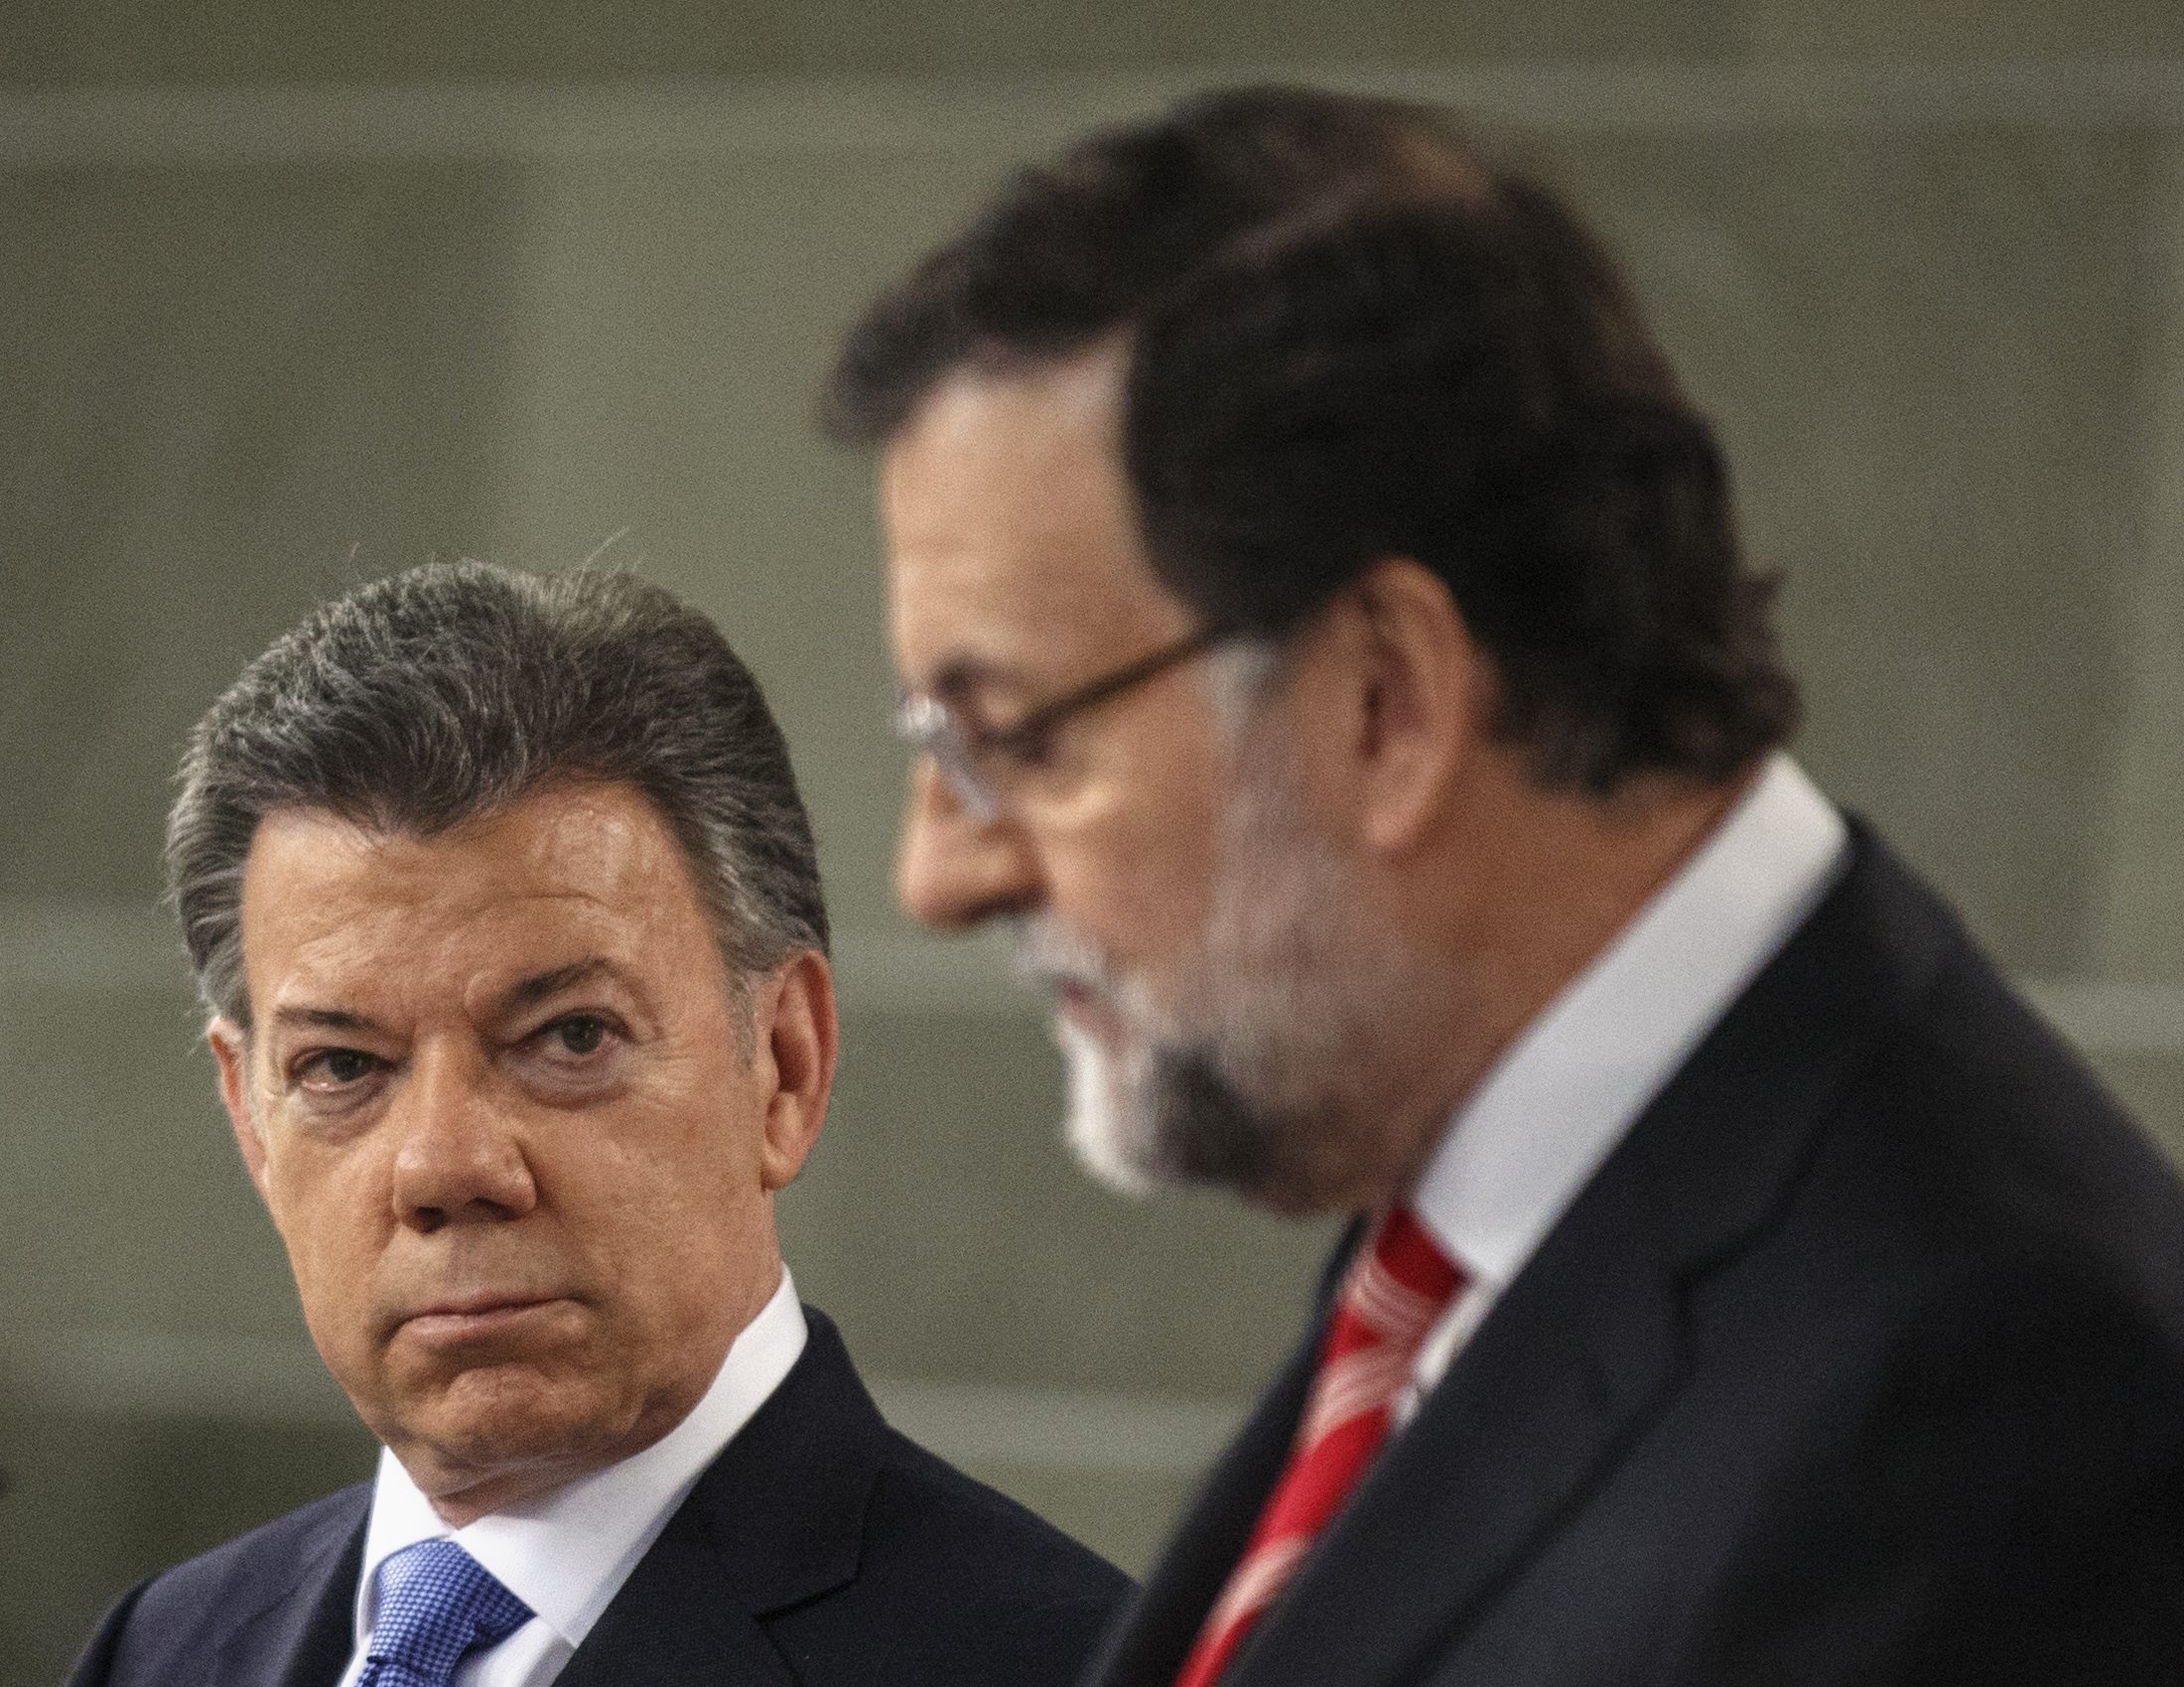 La crisis de Venezuela será un punto clave en la visita de Santos a Rajoy